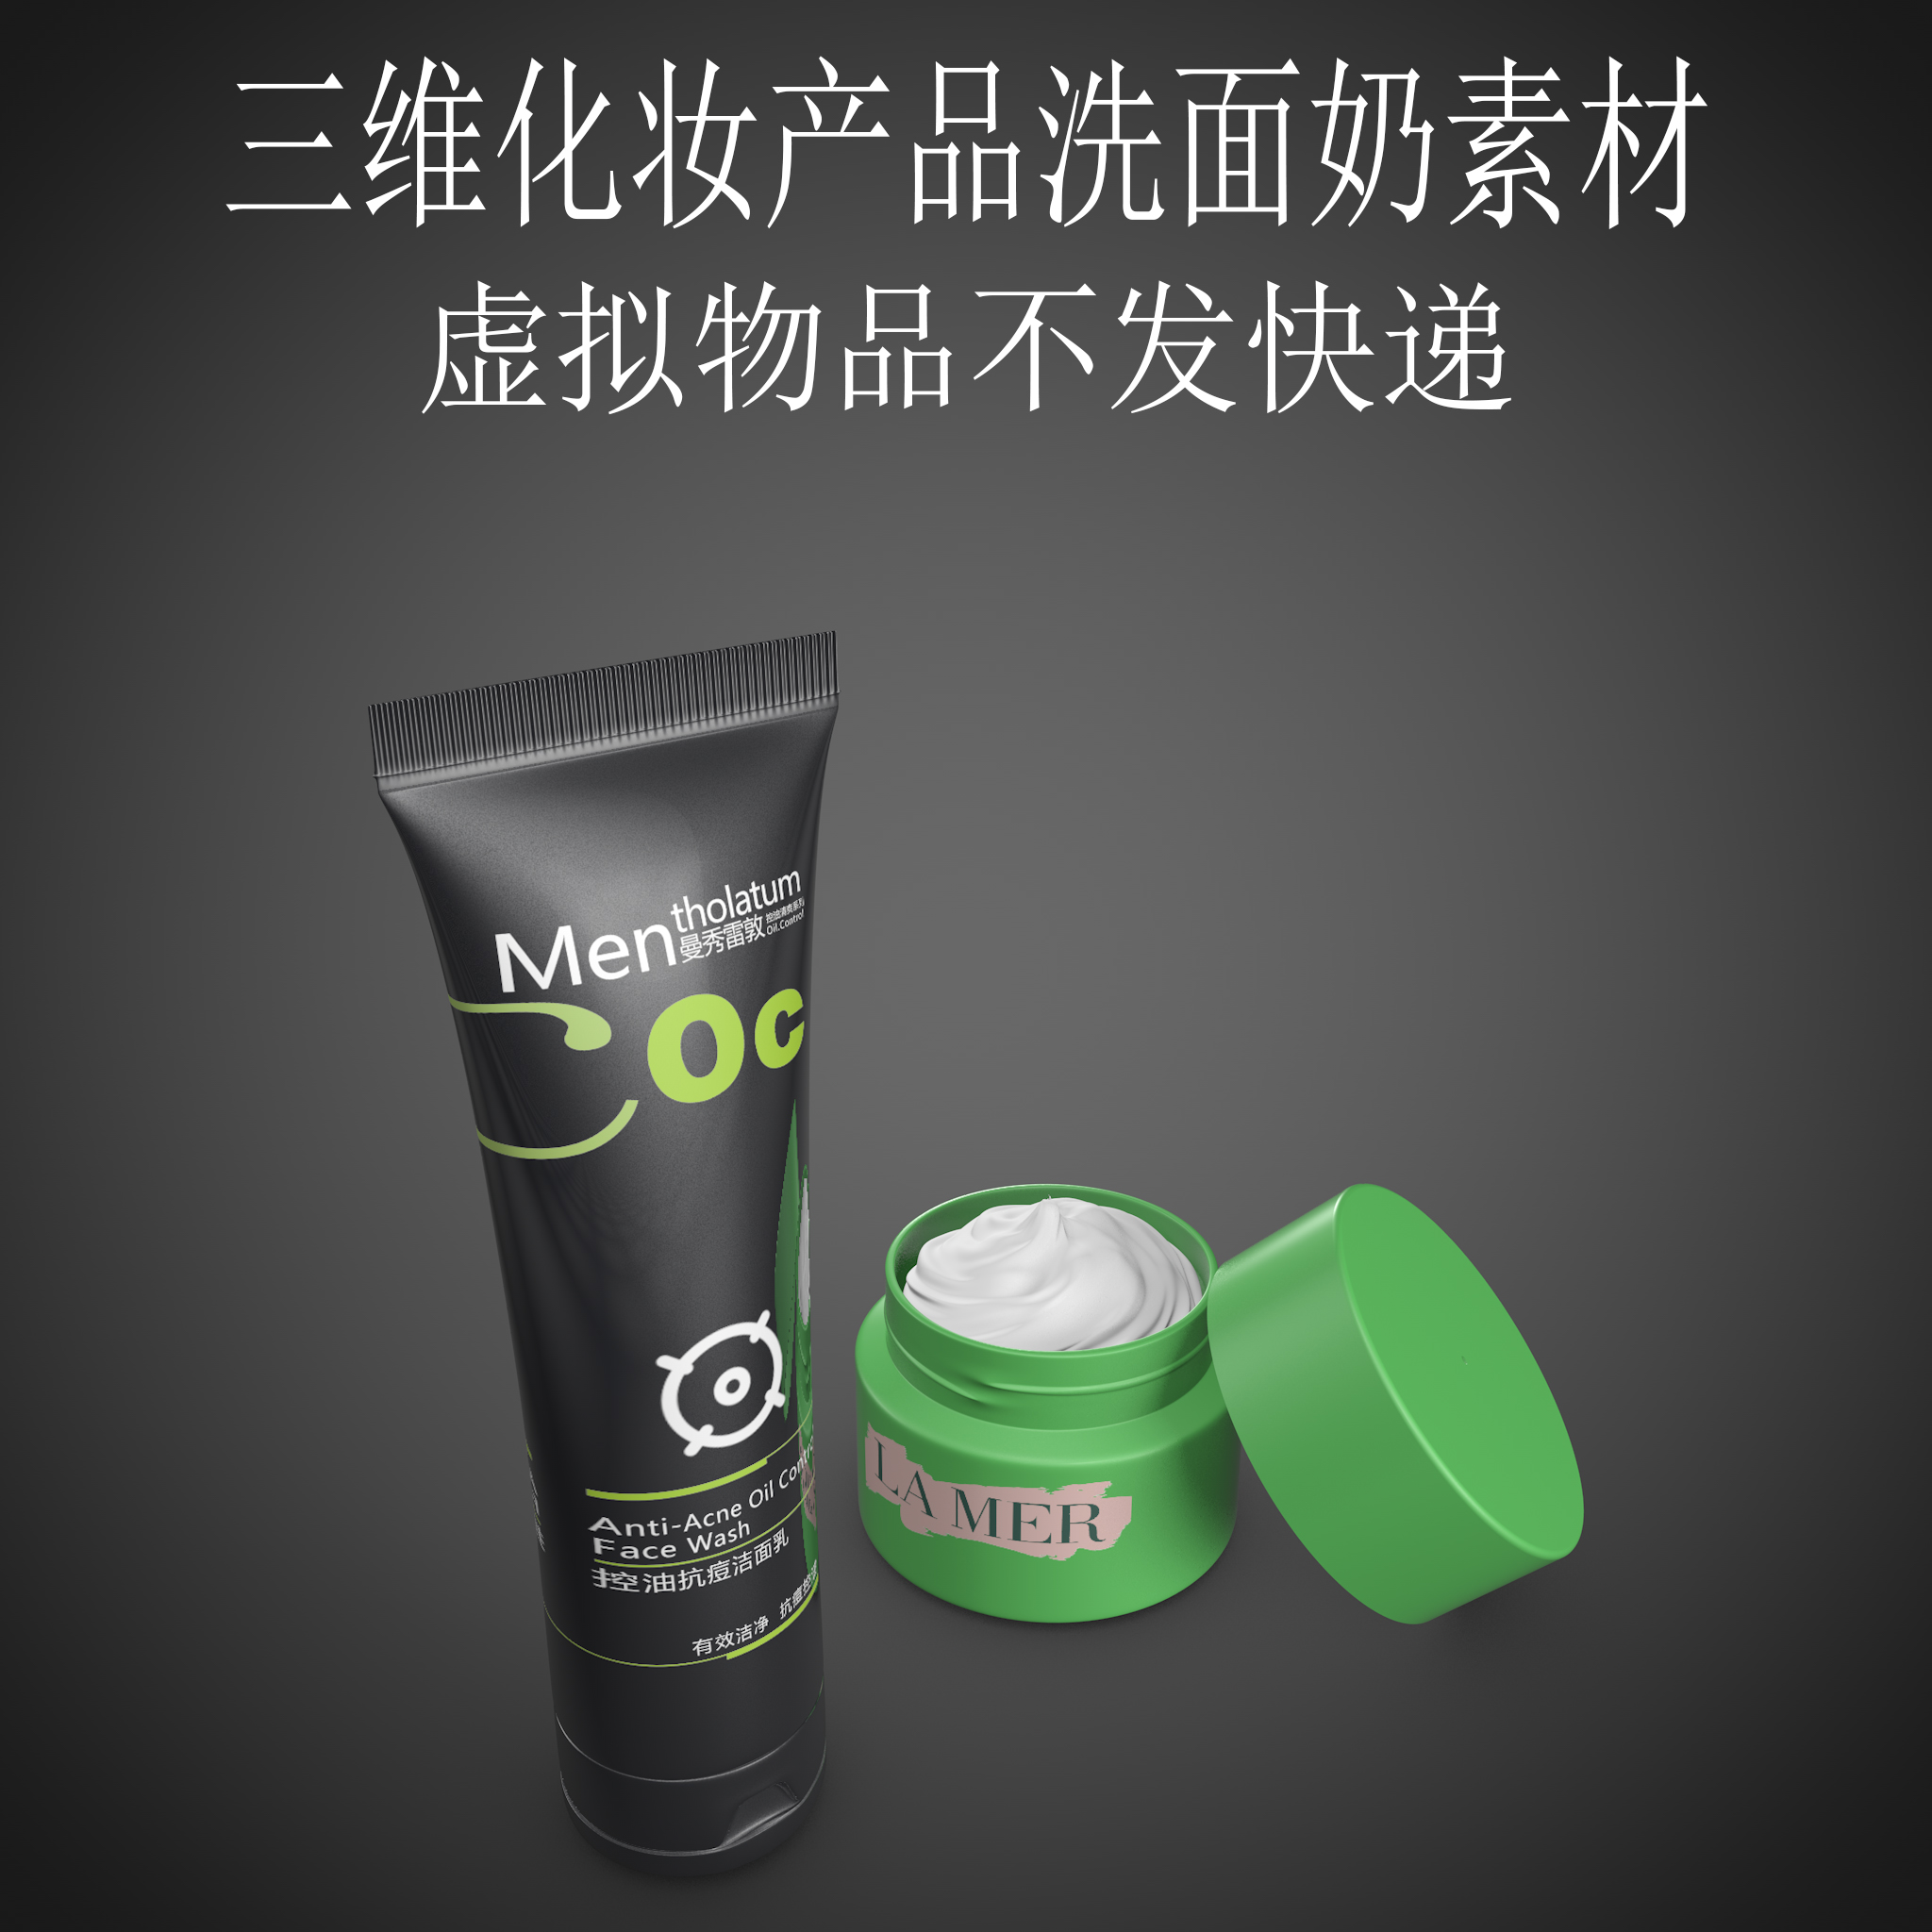 三维4CD化妆产品素材fbx洗面奶产品广告素材3ds洗护场景obj